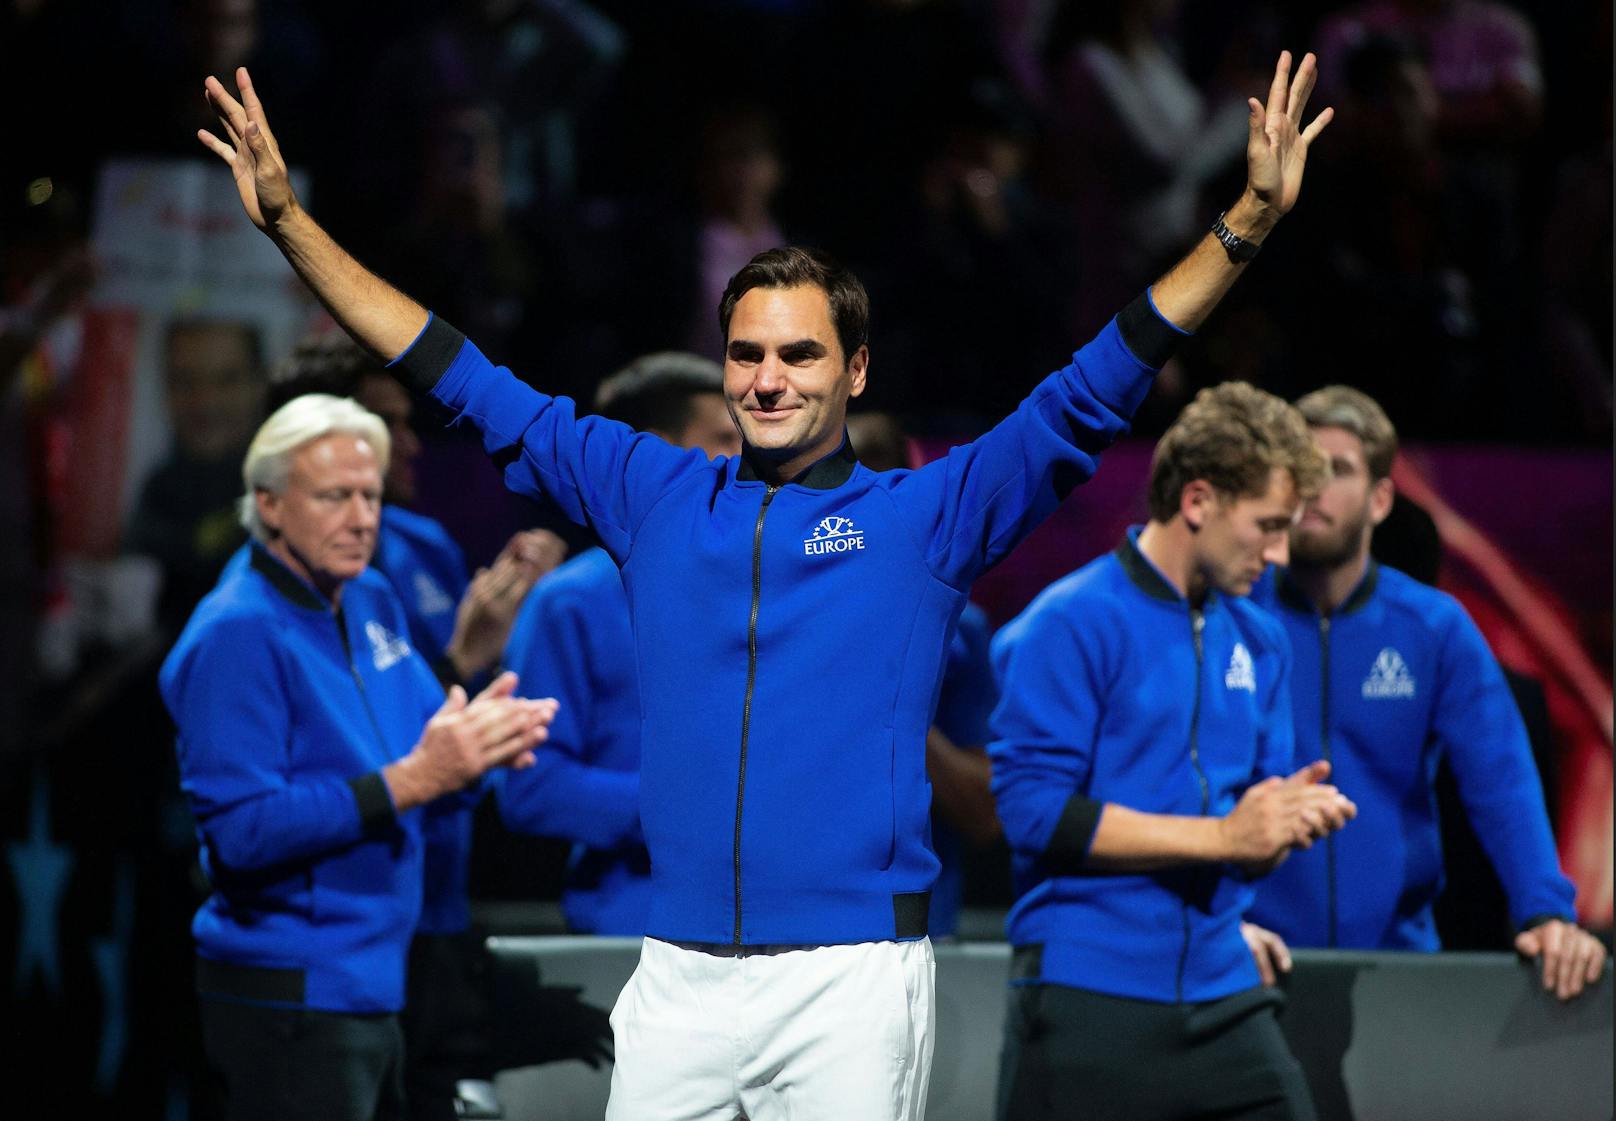 "Werdet mich bald wiedersehen" – kehrt Federer zurück?